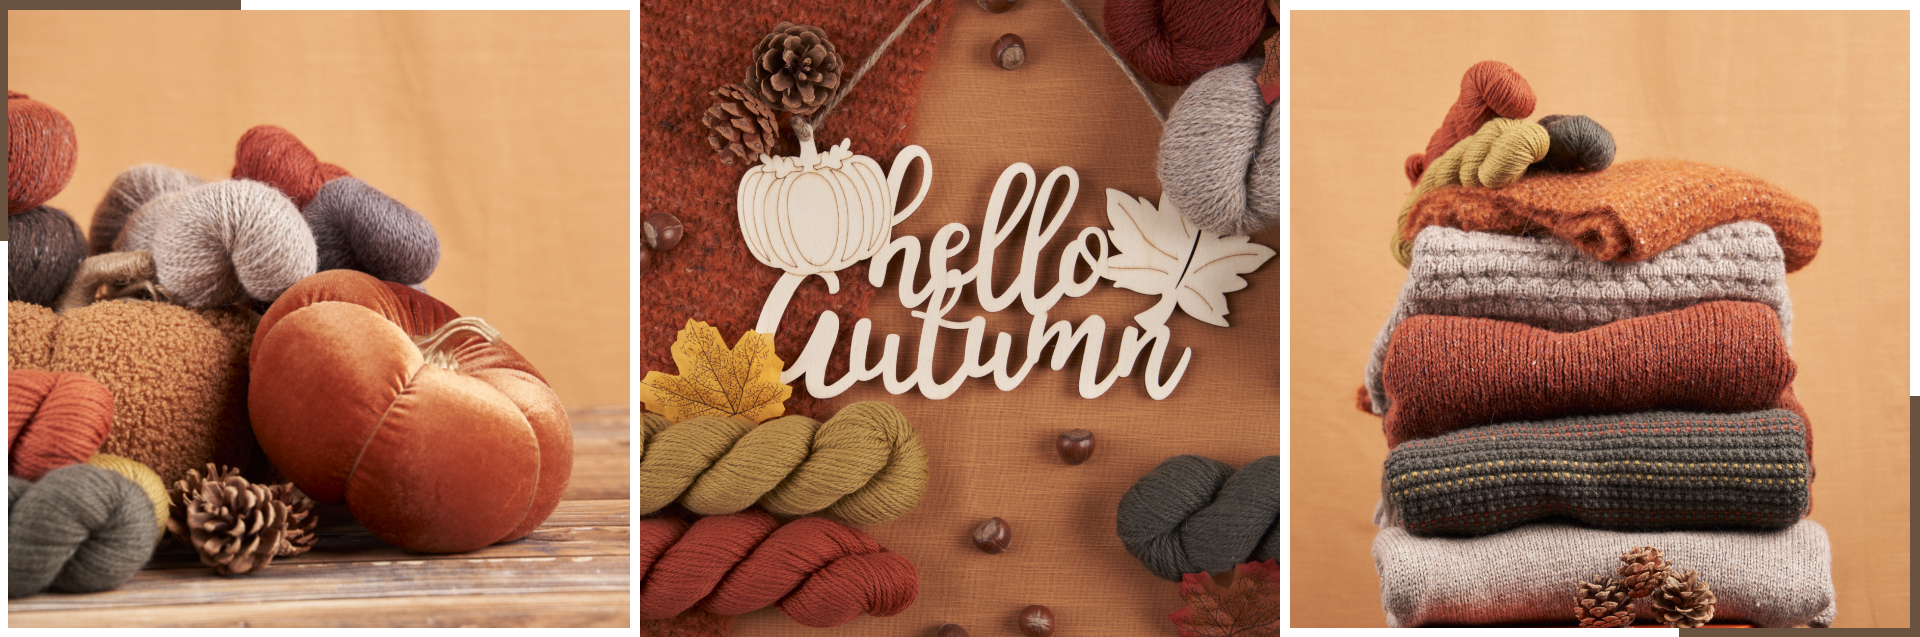 hello autumn banner